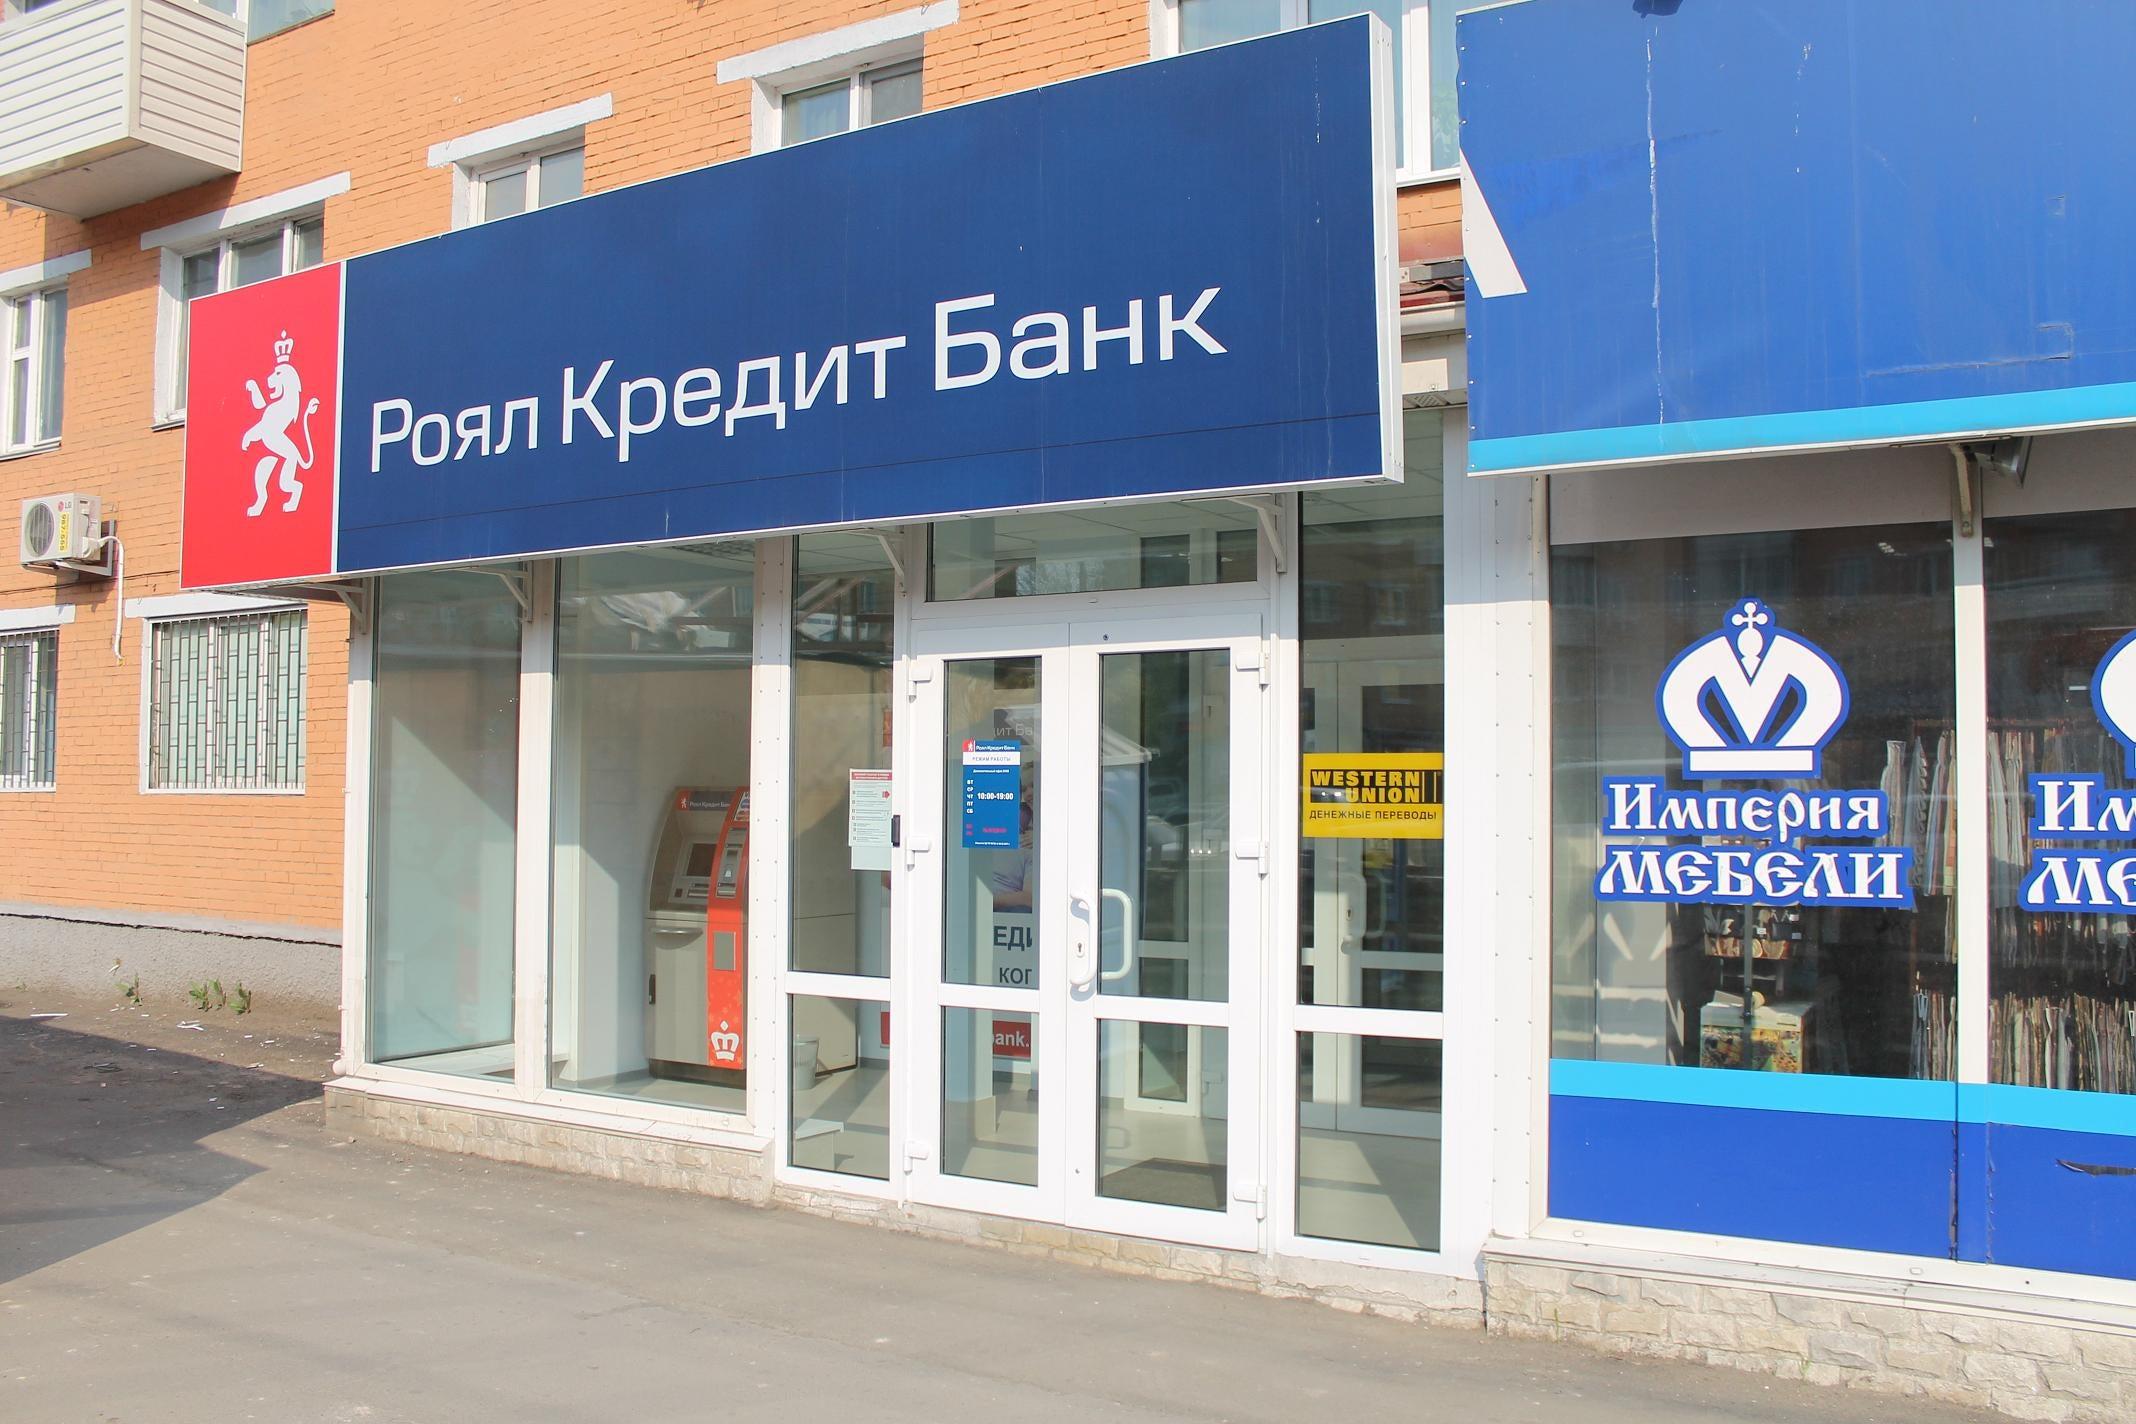 Кредитные банки новосибирска. Роял банк. Банк Владивосток. Роял кредит банк Владивосток. Банк кредит Свисс.